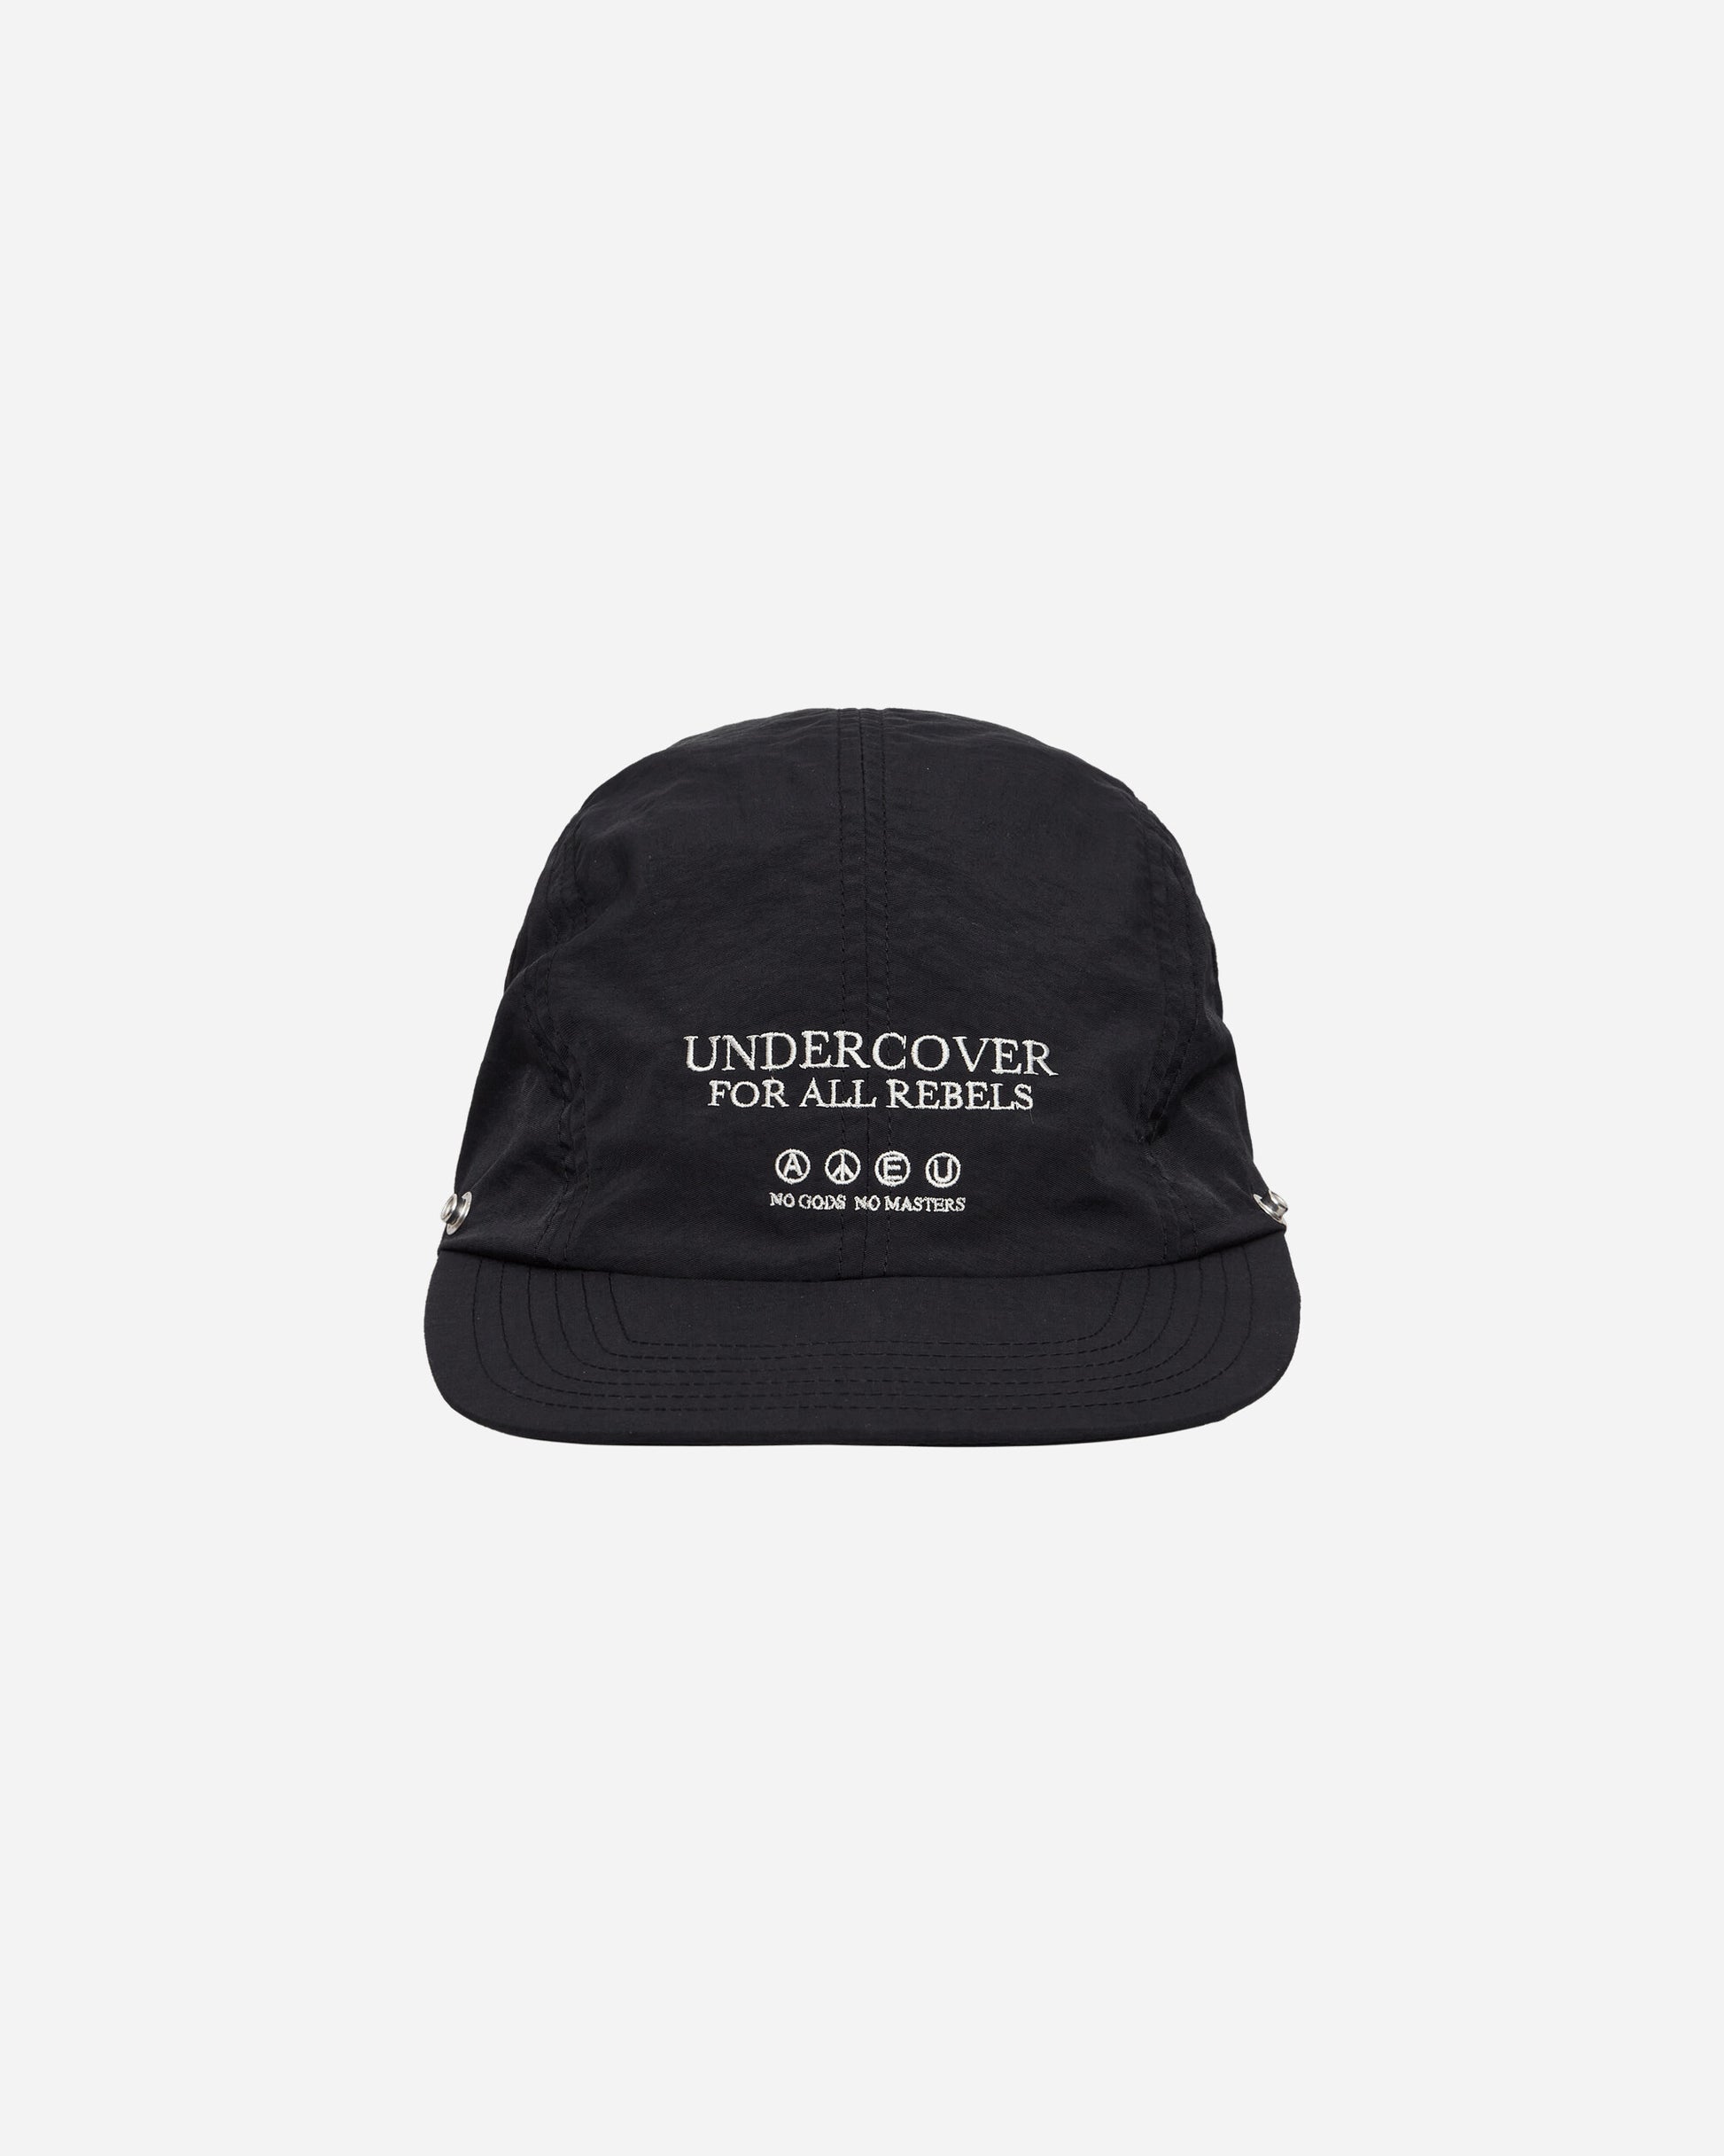 Undercover Cap Black Hats Caps UP1D4H03 1